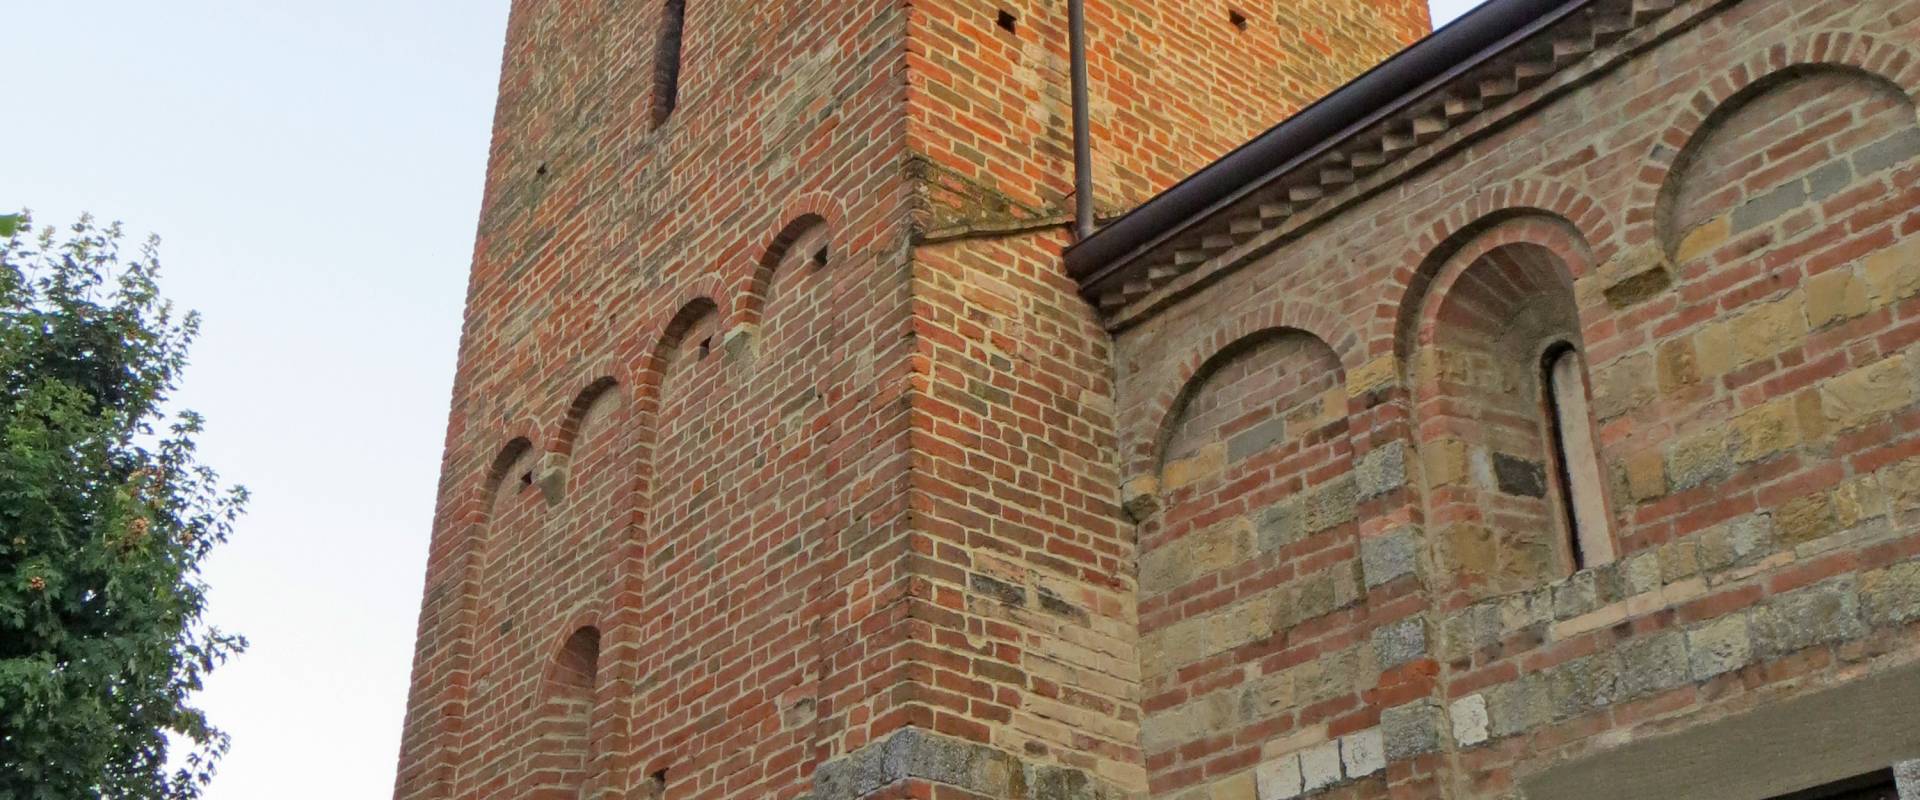 Pieve di San Biagio (Talignano, Sala Baganza) - campanile 2019-09-16 foto di Parma198